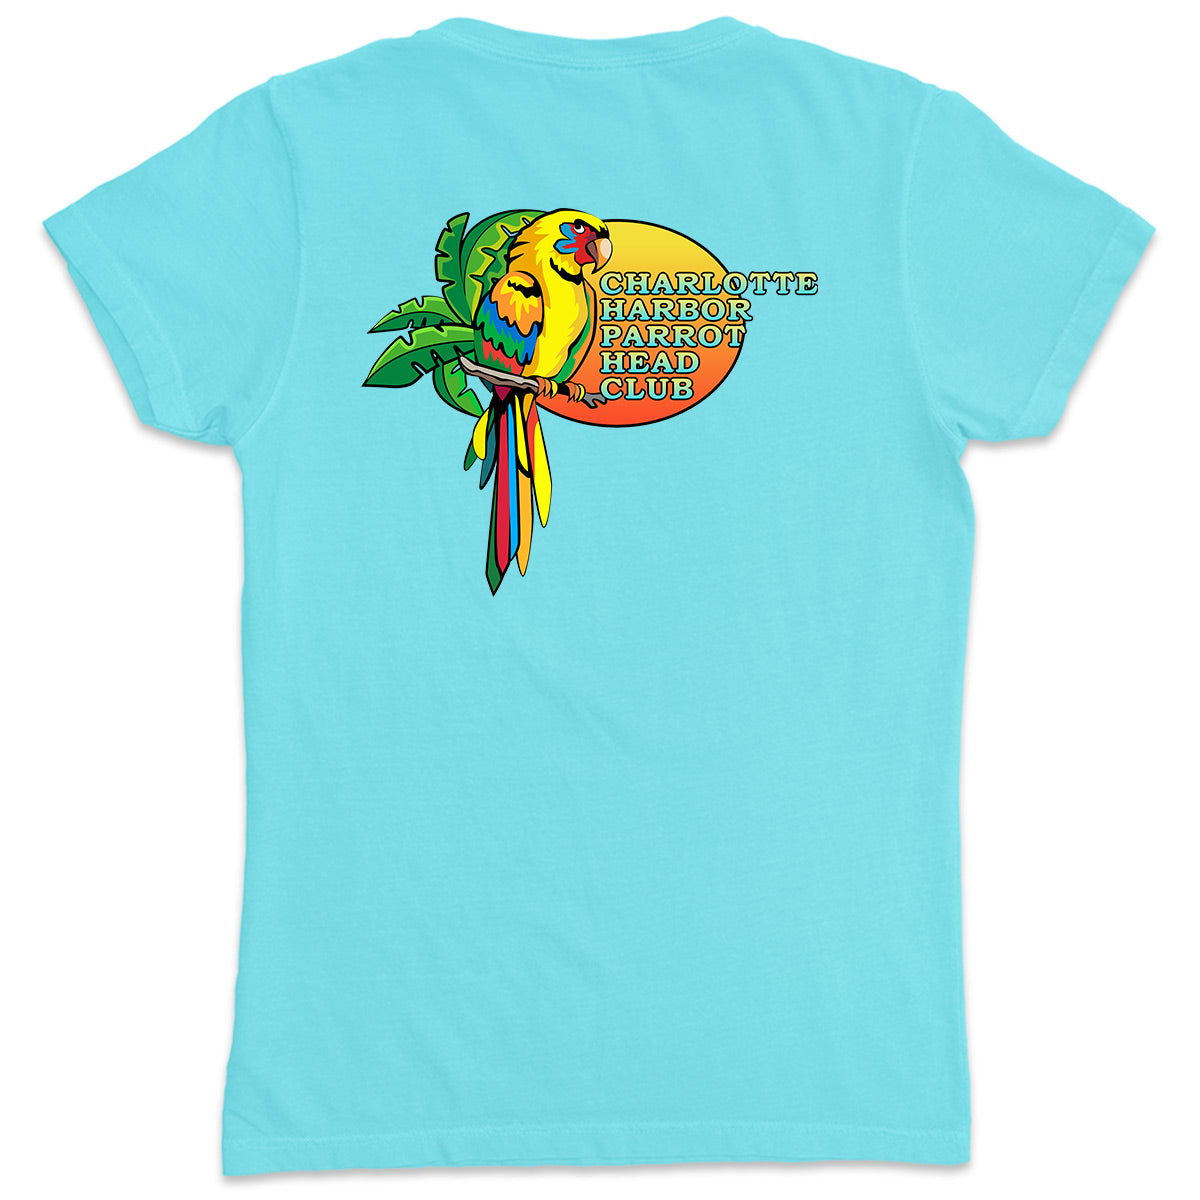 Women's Charlotte Harbor Parrot Head Club V-Neck T-Shirt Aqua